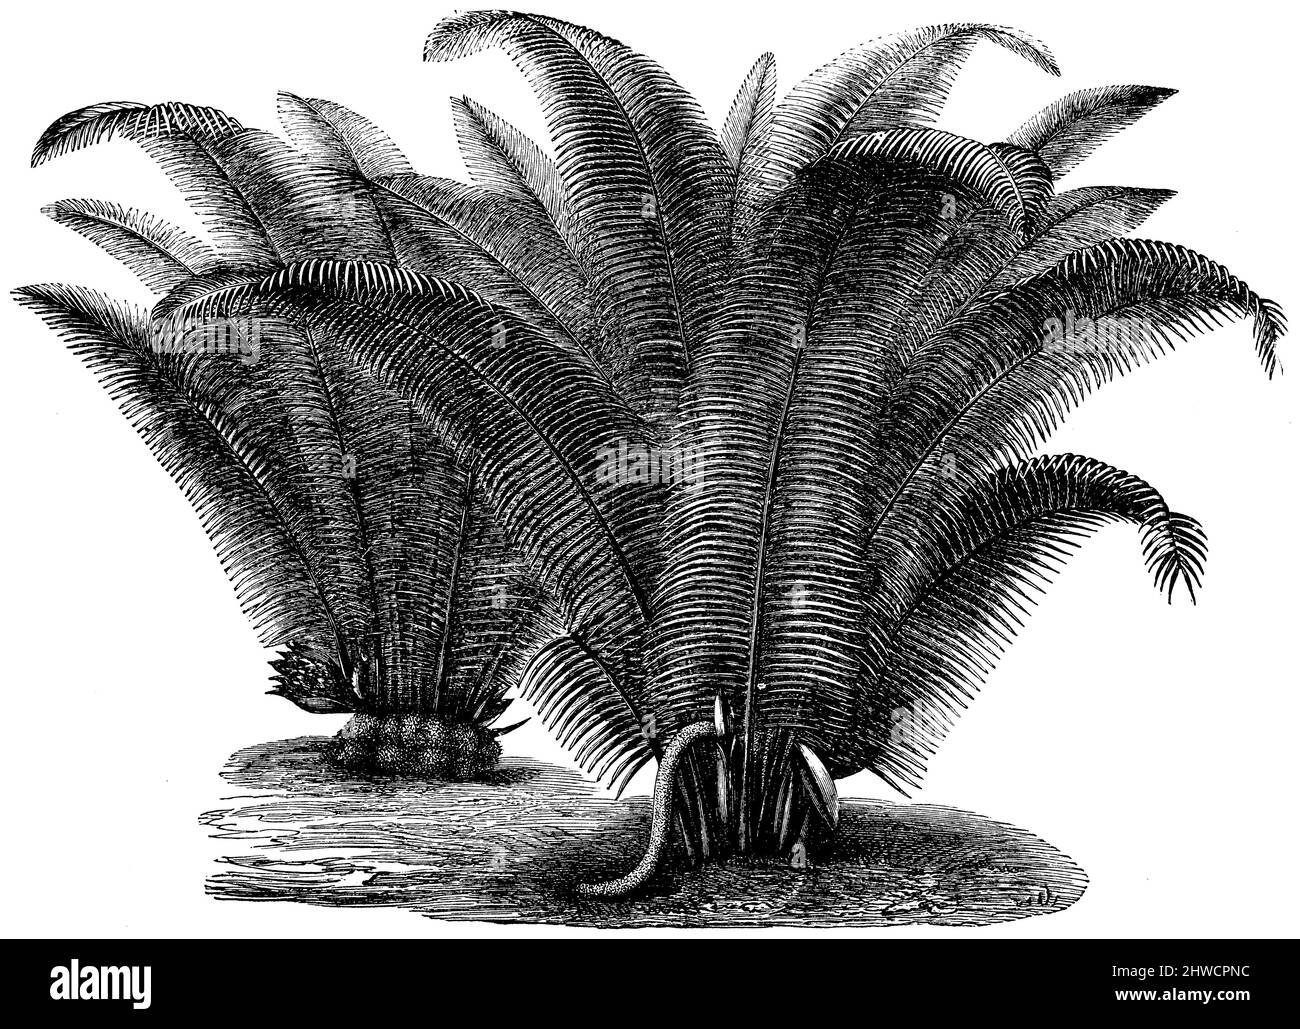 Ivory palm à droite en fleur, à gauche en fruit, Phytelephas macrocarpa,  (botany book, ca. 1900), Elfenbeinpalme rechts blühend, links fruchtend, palmier à ivoire à gros fruits à droite en fleur, à gauche en fruit Stock Photo